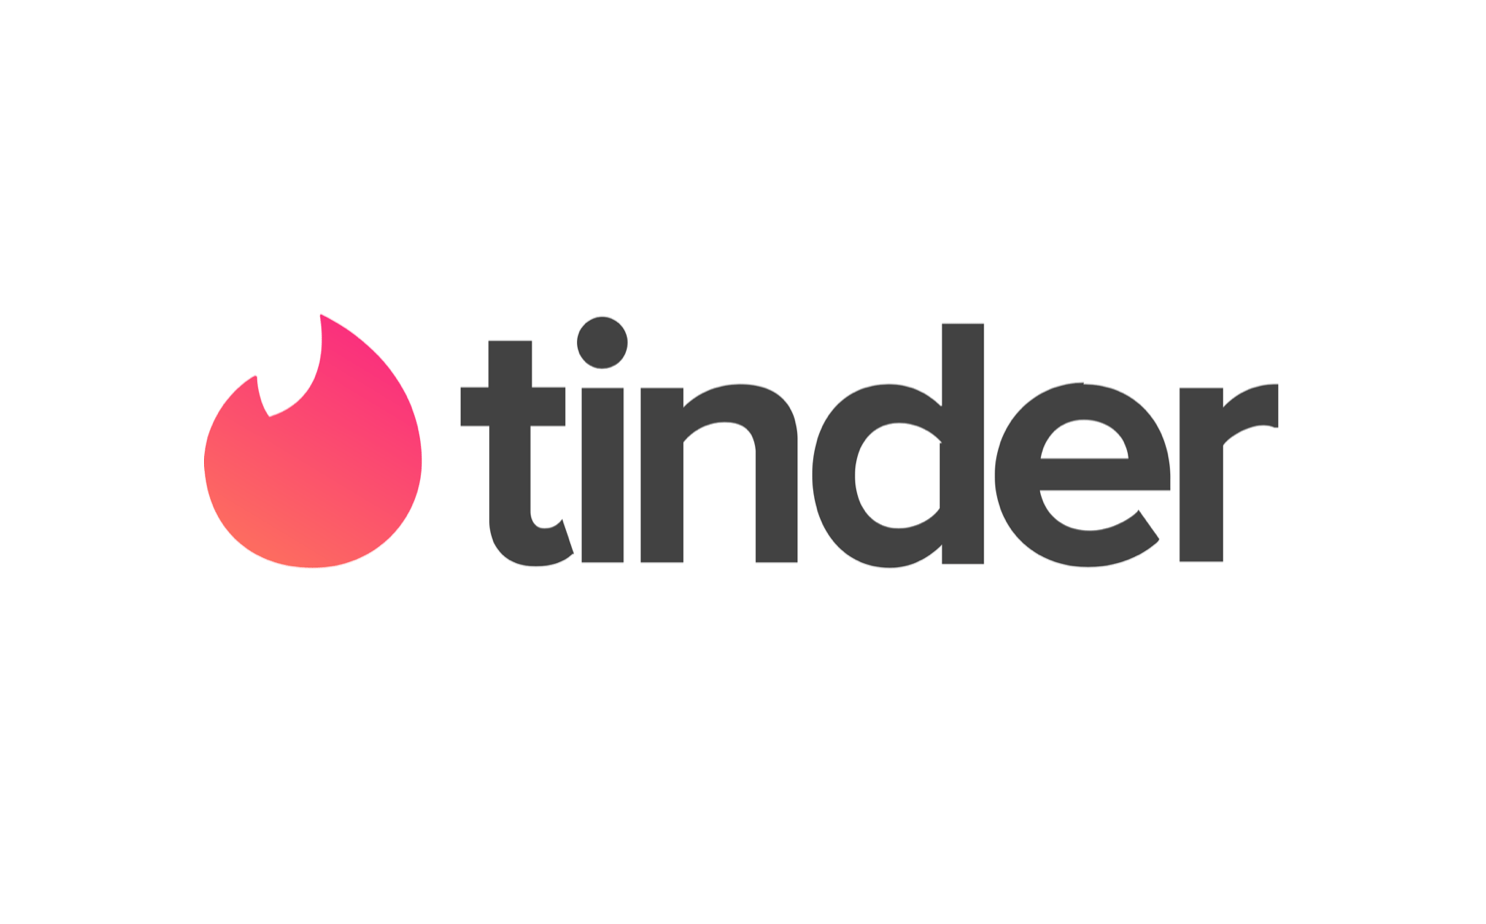 An image of Tinder's logo.